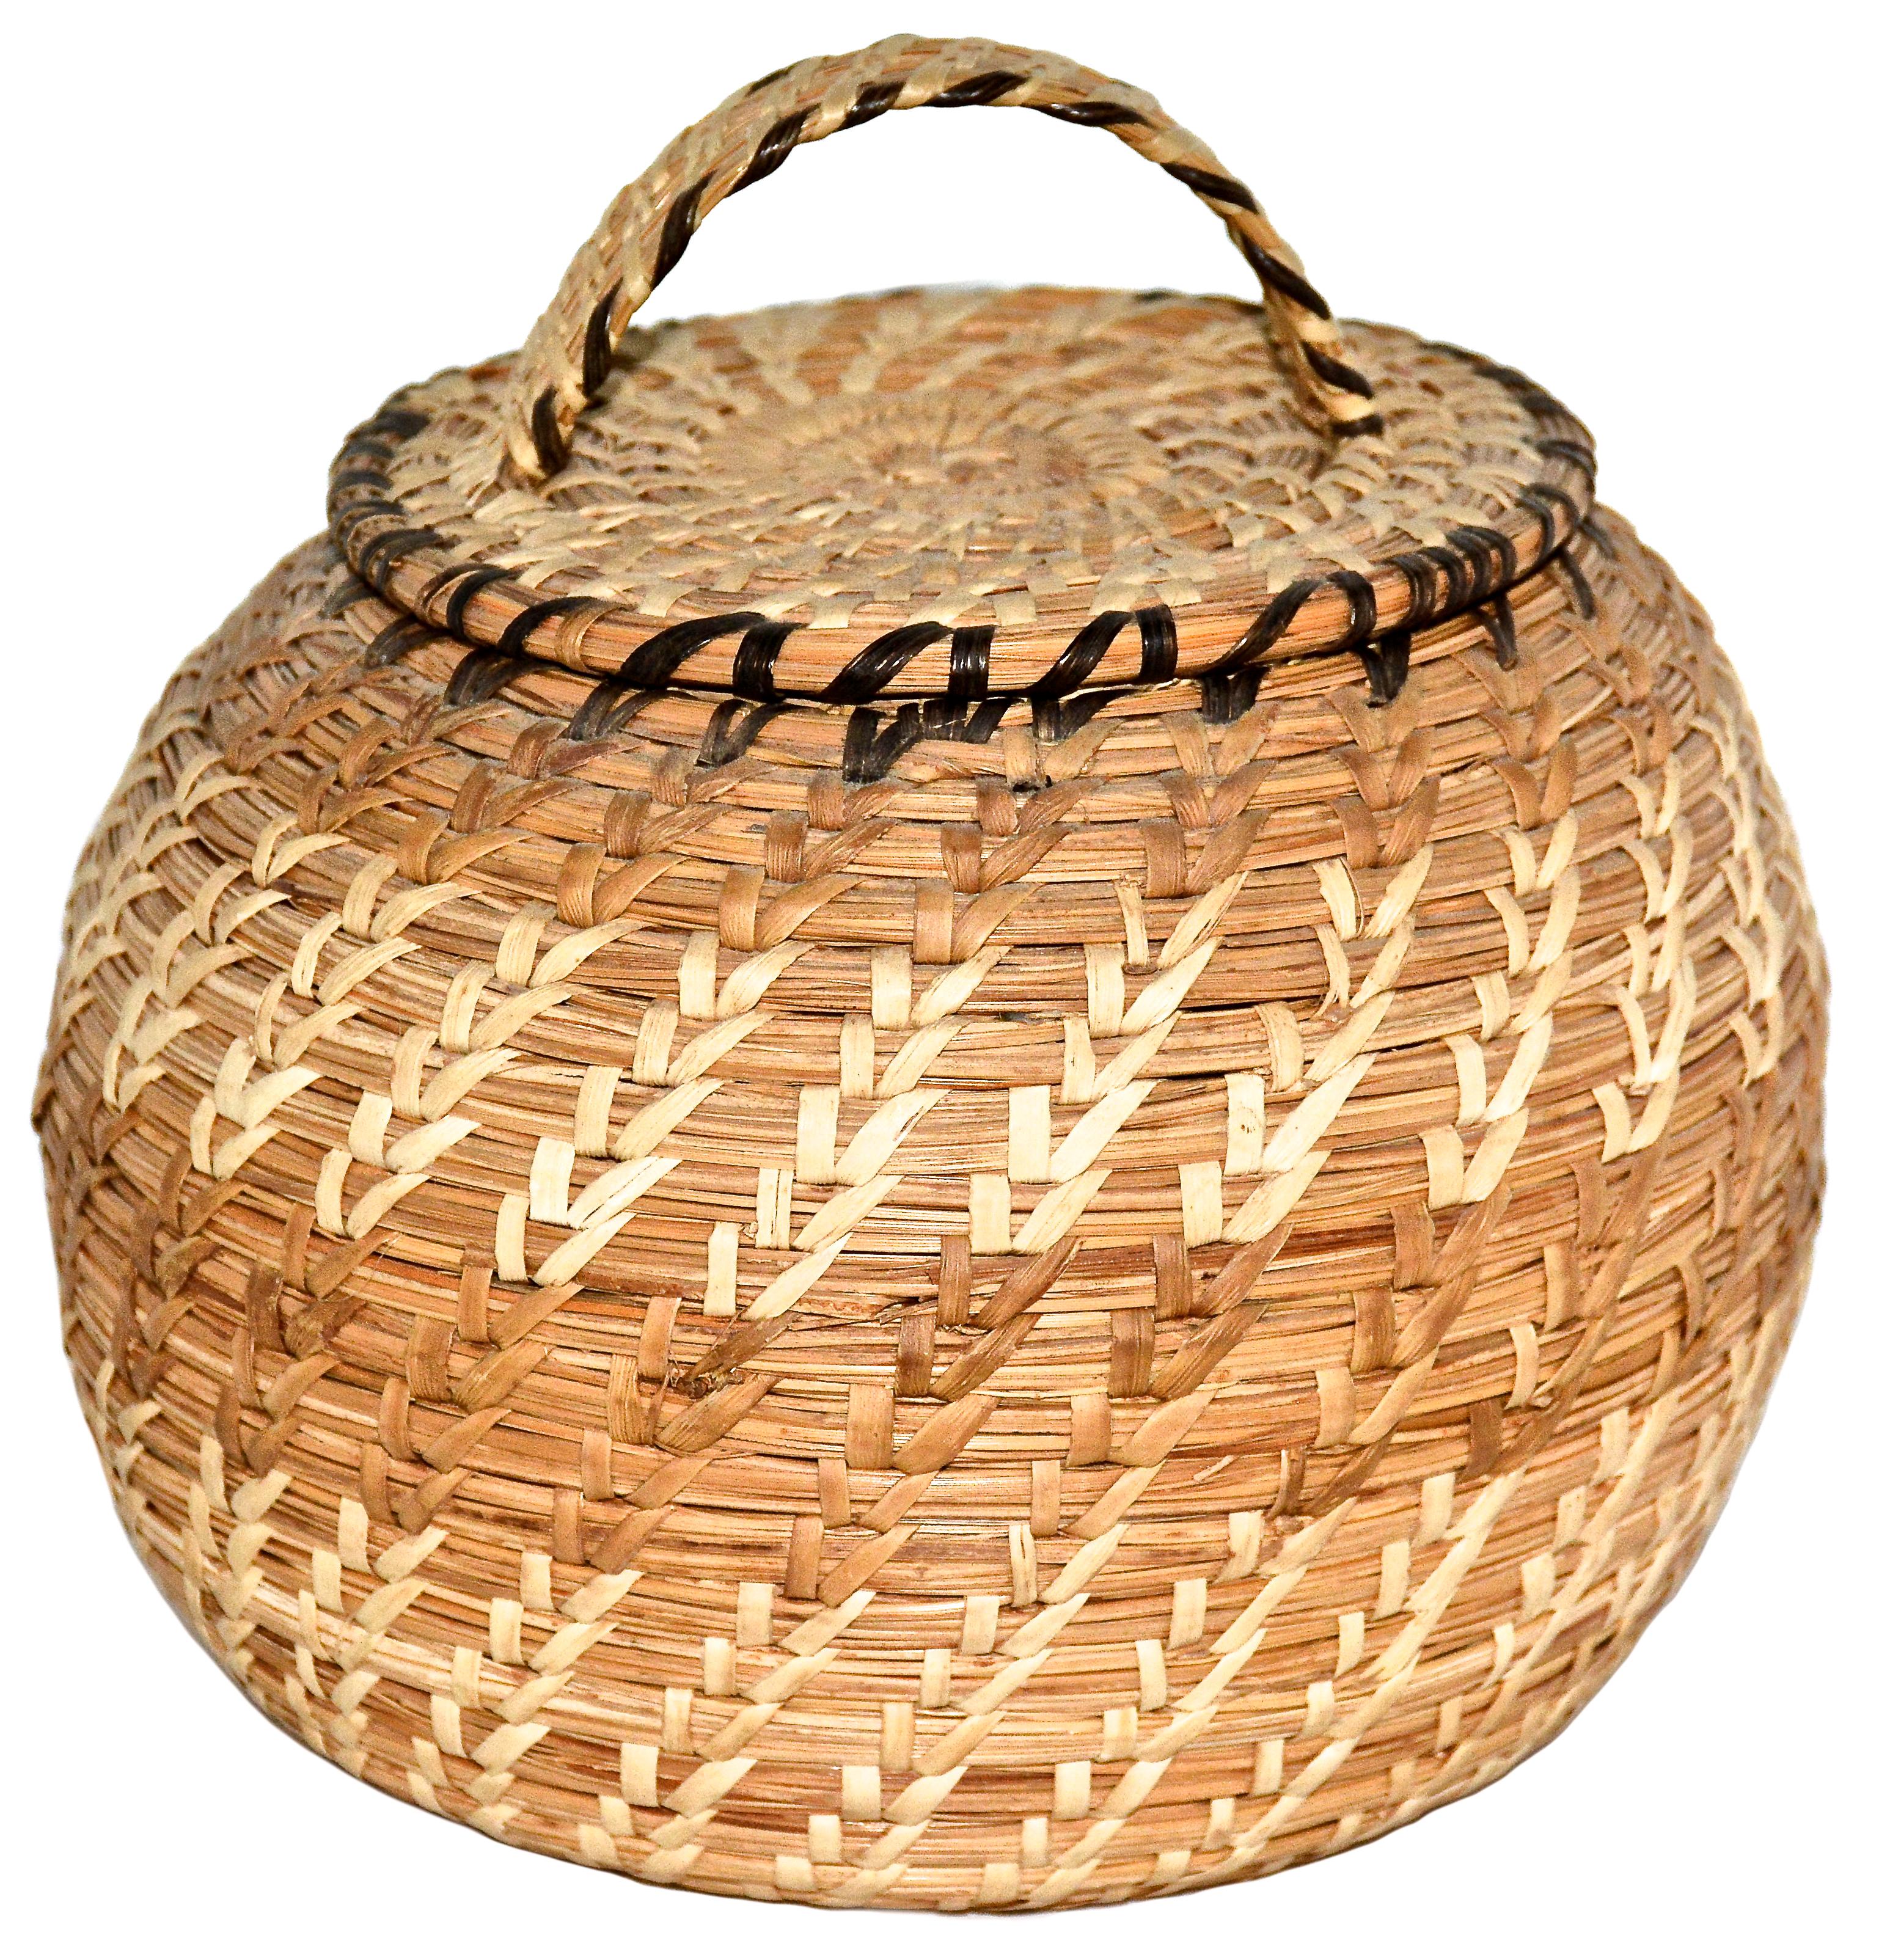 alaska native baskets